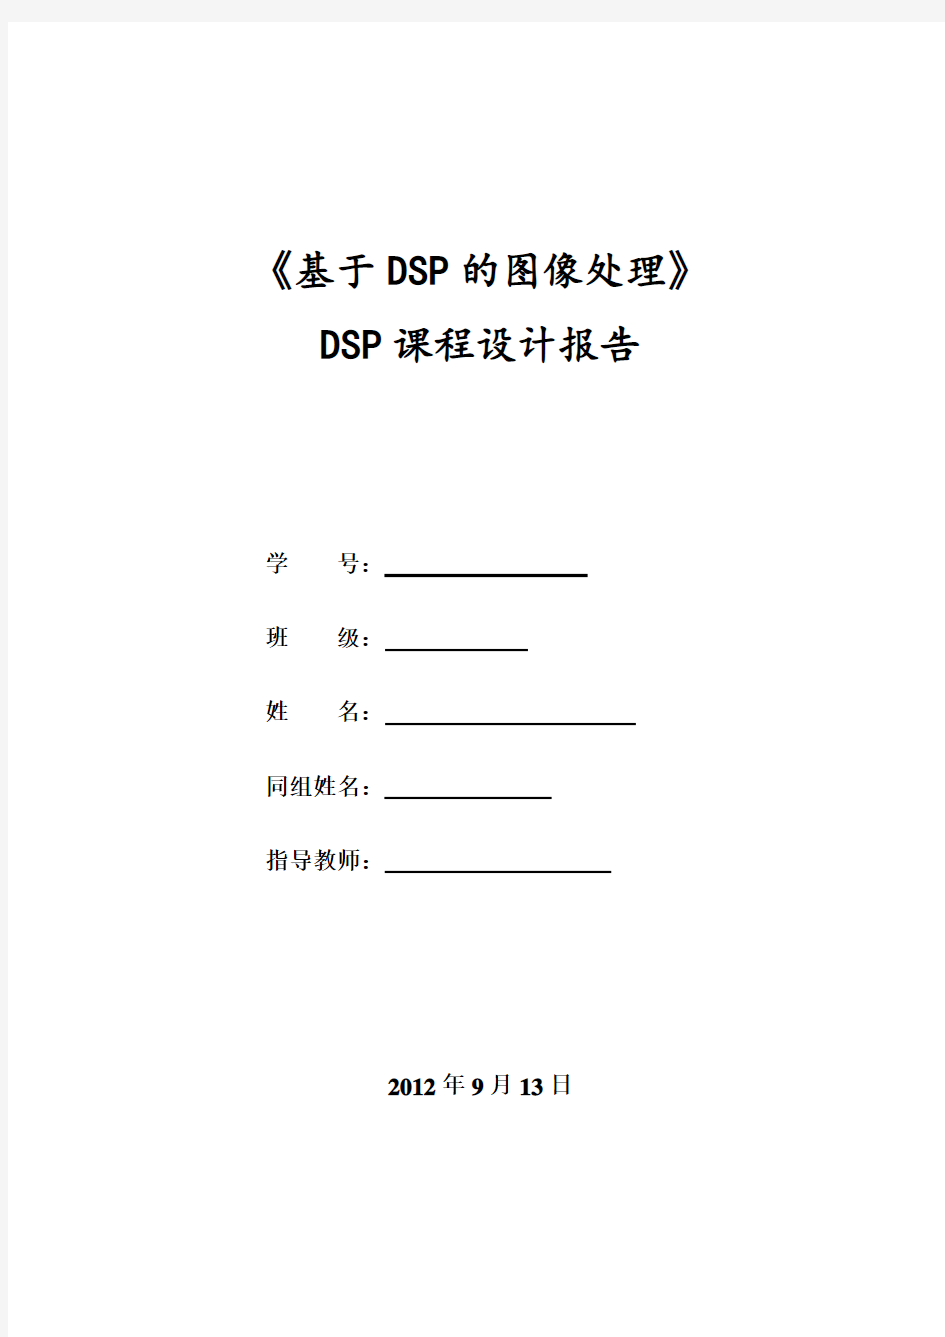 《基于DSP的图像处理》-dsp课程设计要点